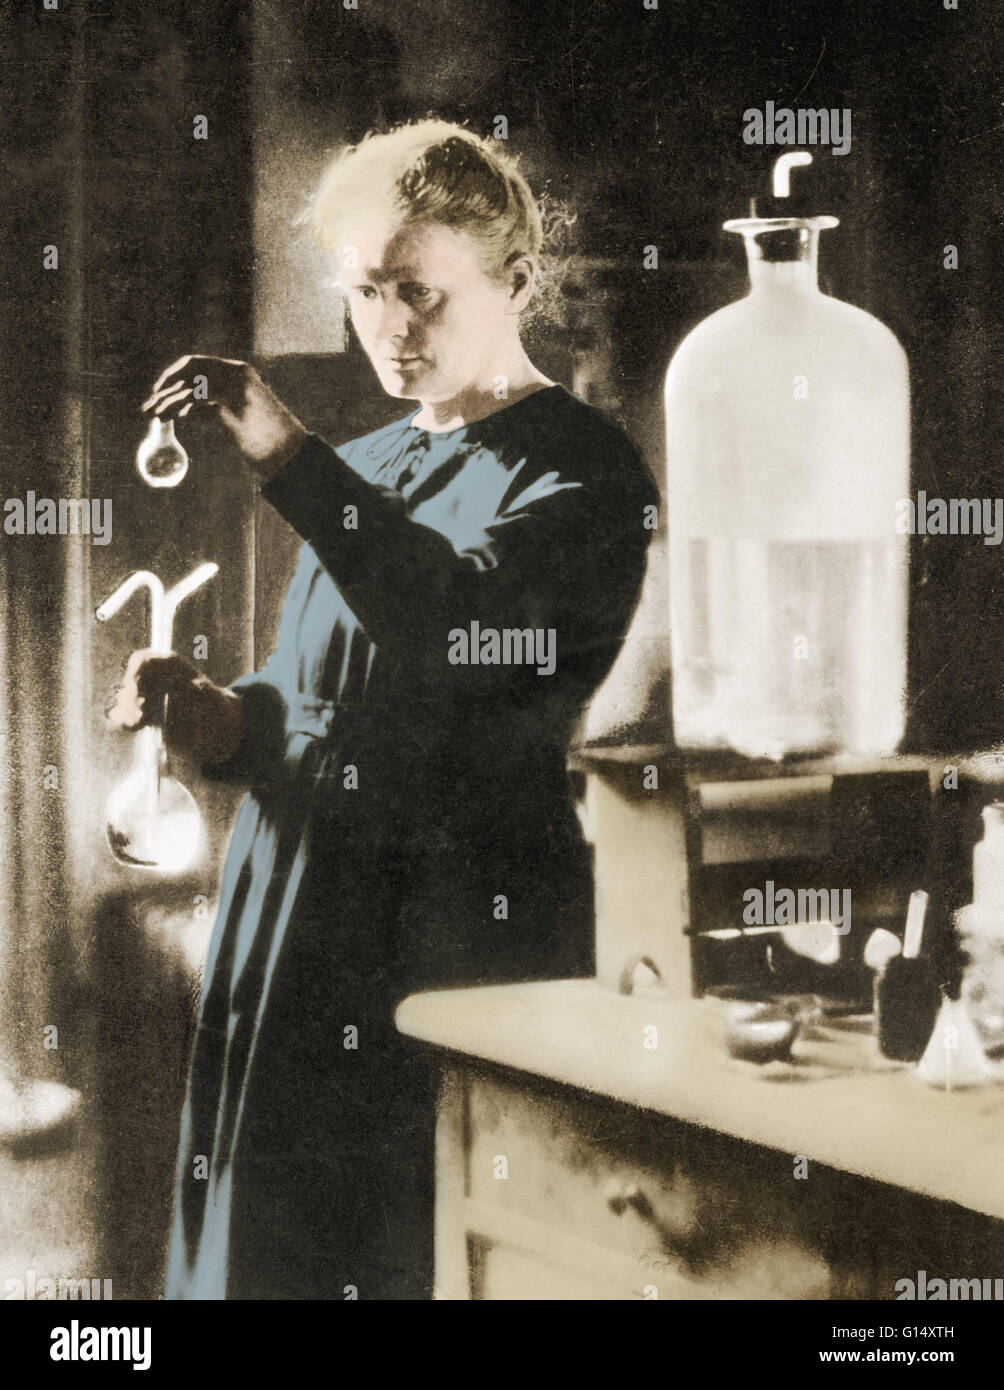 Marie Curie (1867-1934) war ein polnisch-französischer Physiker und Chemiker, die berühmt für ihre bahnbrechende Forschung über Radioaktivität. Sie war die erste Person mit zwei Nobelpreise ausgezeichnet; Physik und Chemie. Sie teilte ihr 1903 Nobelpreis für Physik mit ihren husba Stockfoto